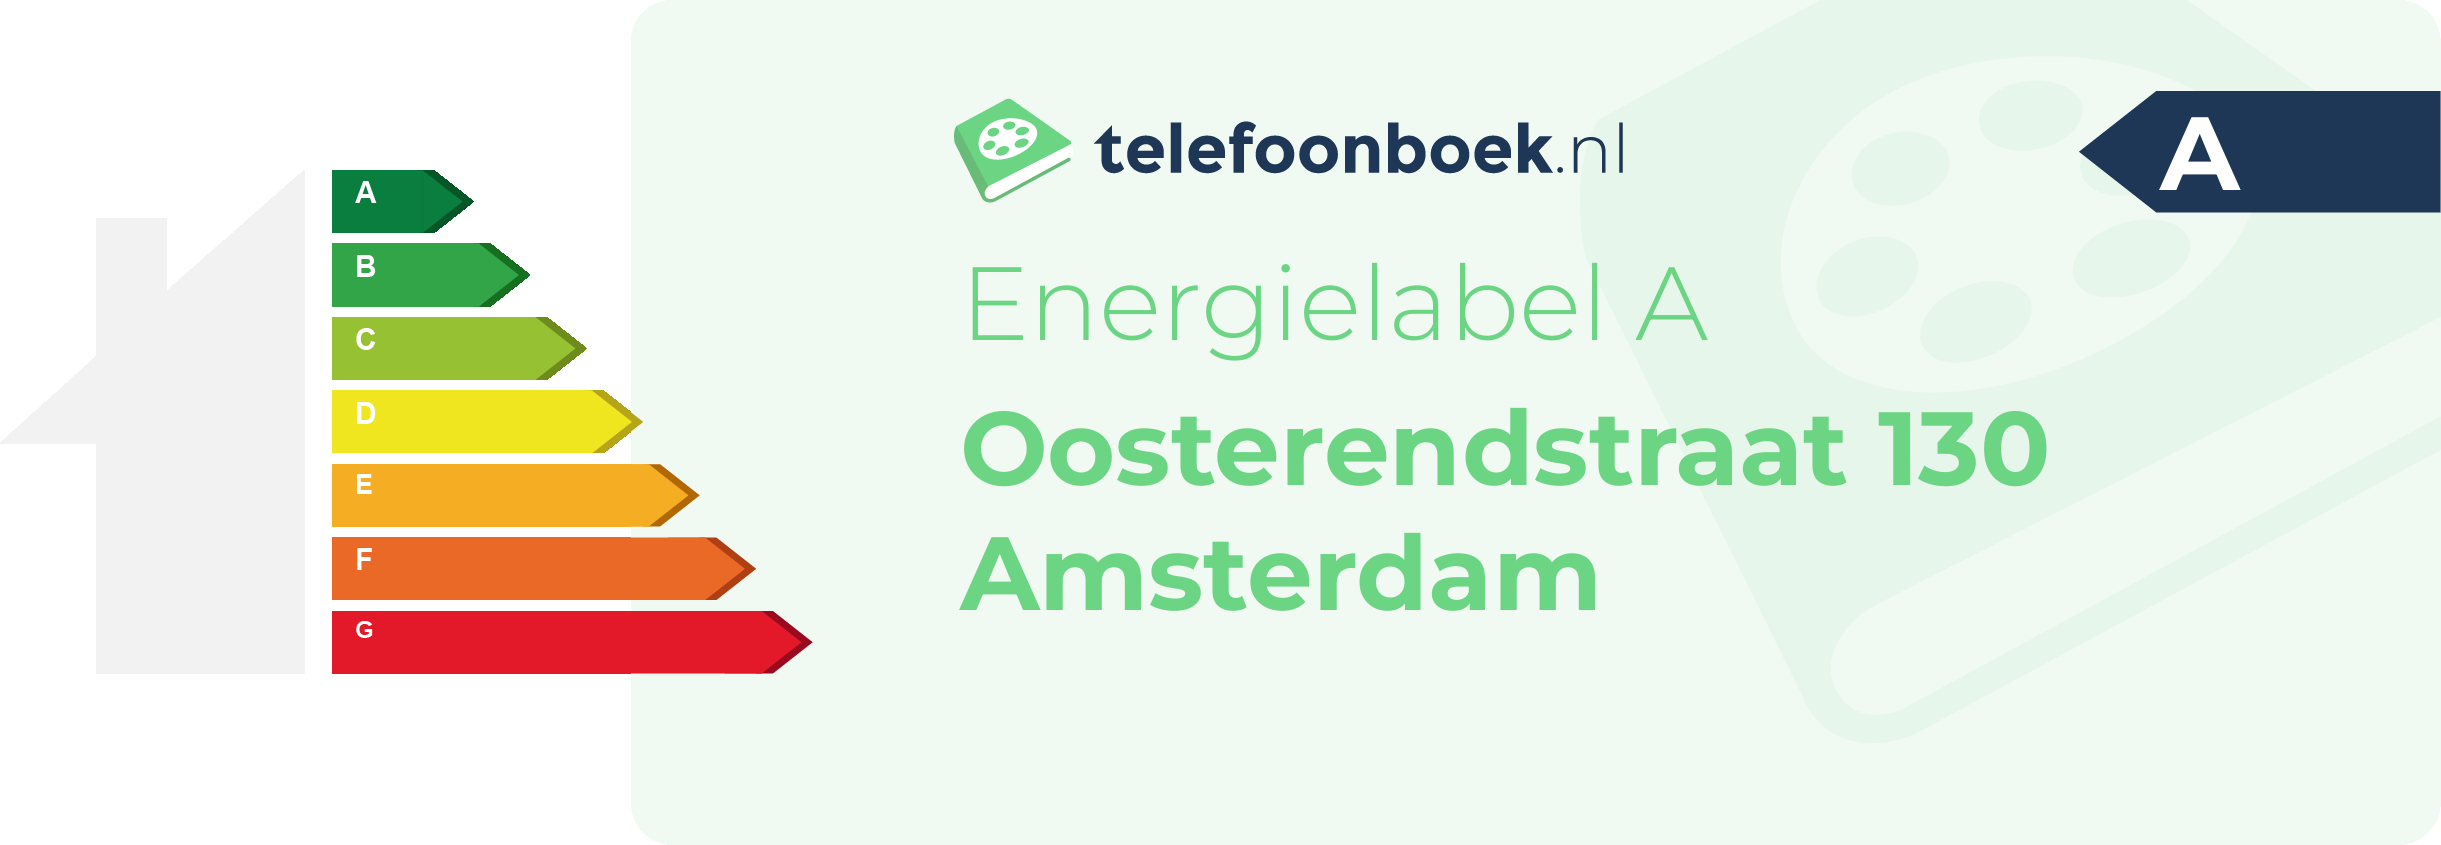 Energielabel Oosterendstraat 130 Amsterdam